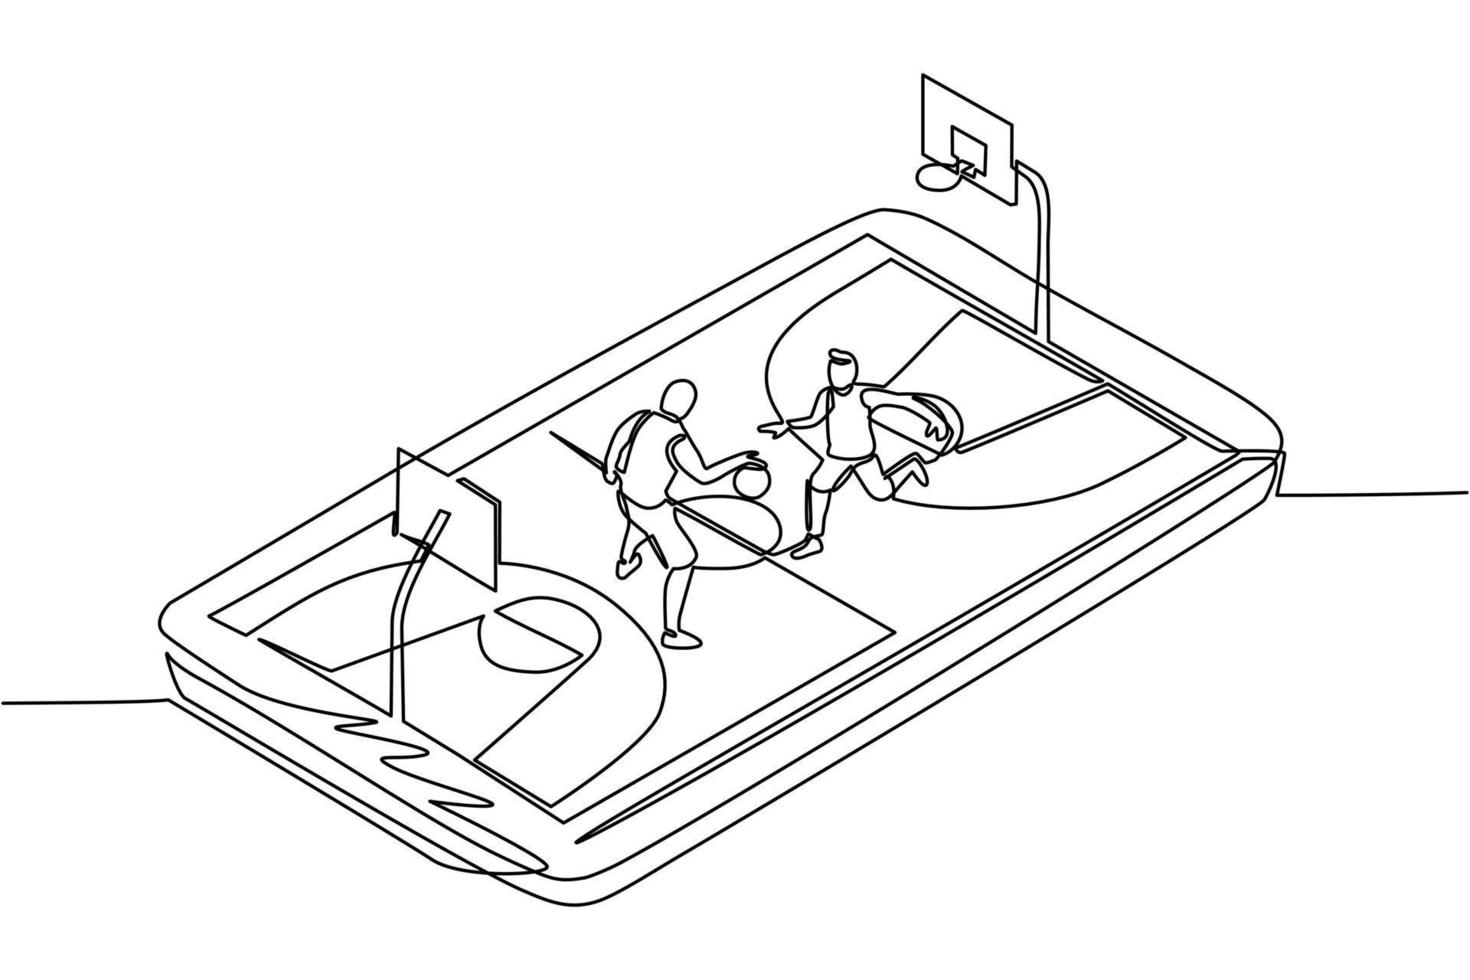 Einzelner einzeiliger Basketballplatz mit zwei Spielern auf dem Smartphone-Bildschirm. Online-Basketballspiel, mobiler E-Sport. Online-Basketballspiel mit mobiler Live-App. Designvektor mit durchgehender Linie vektor